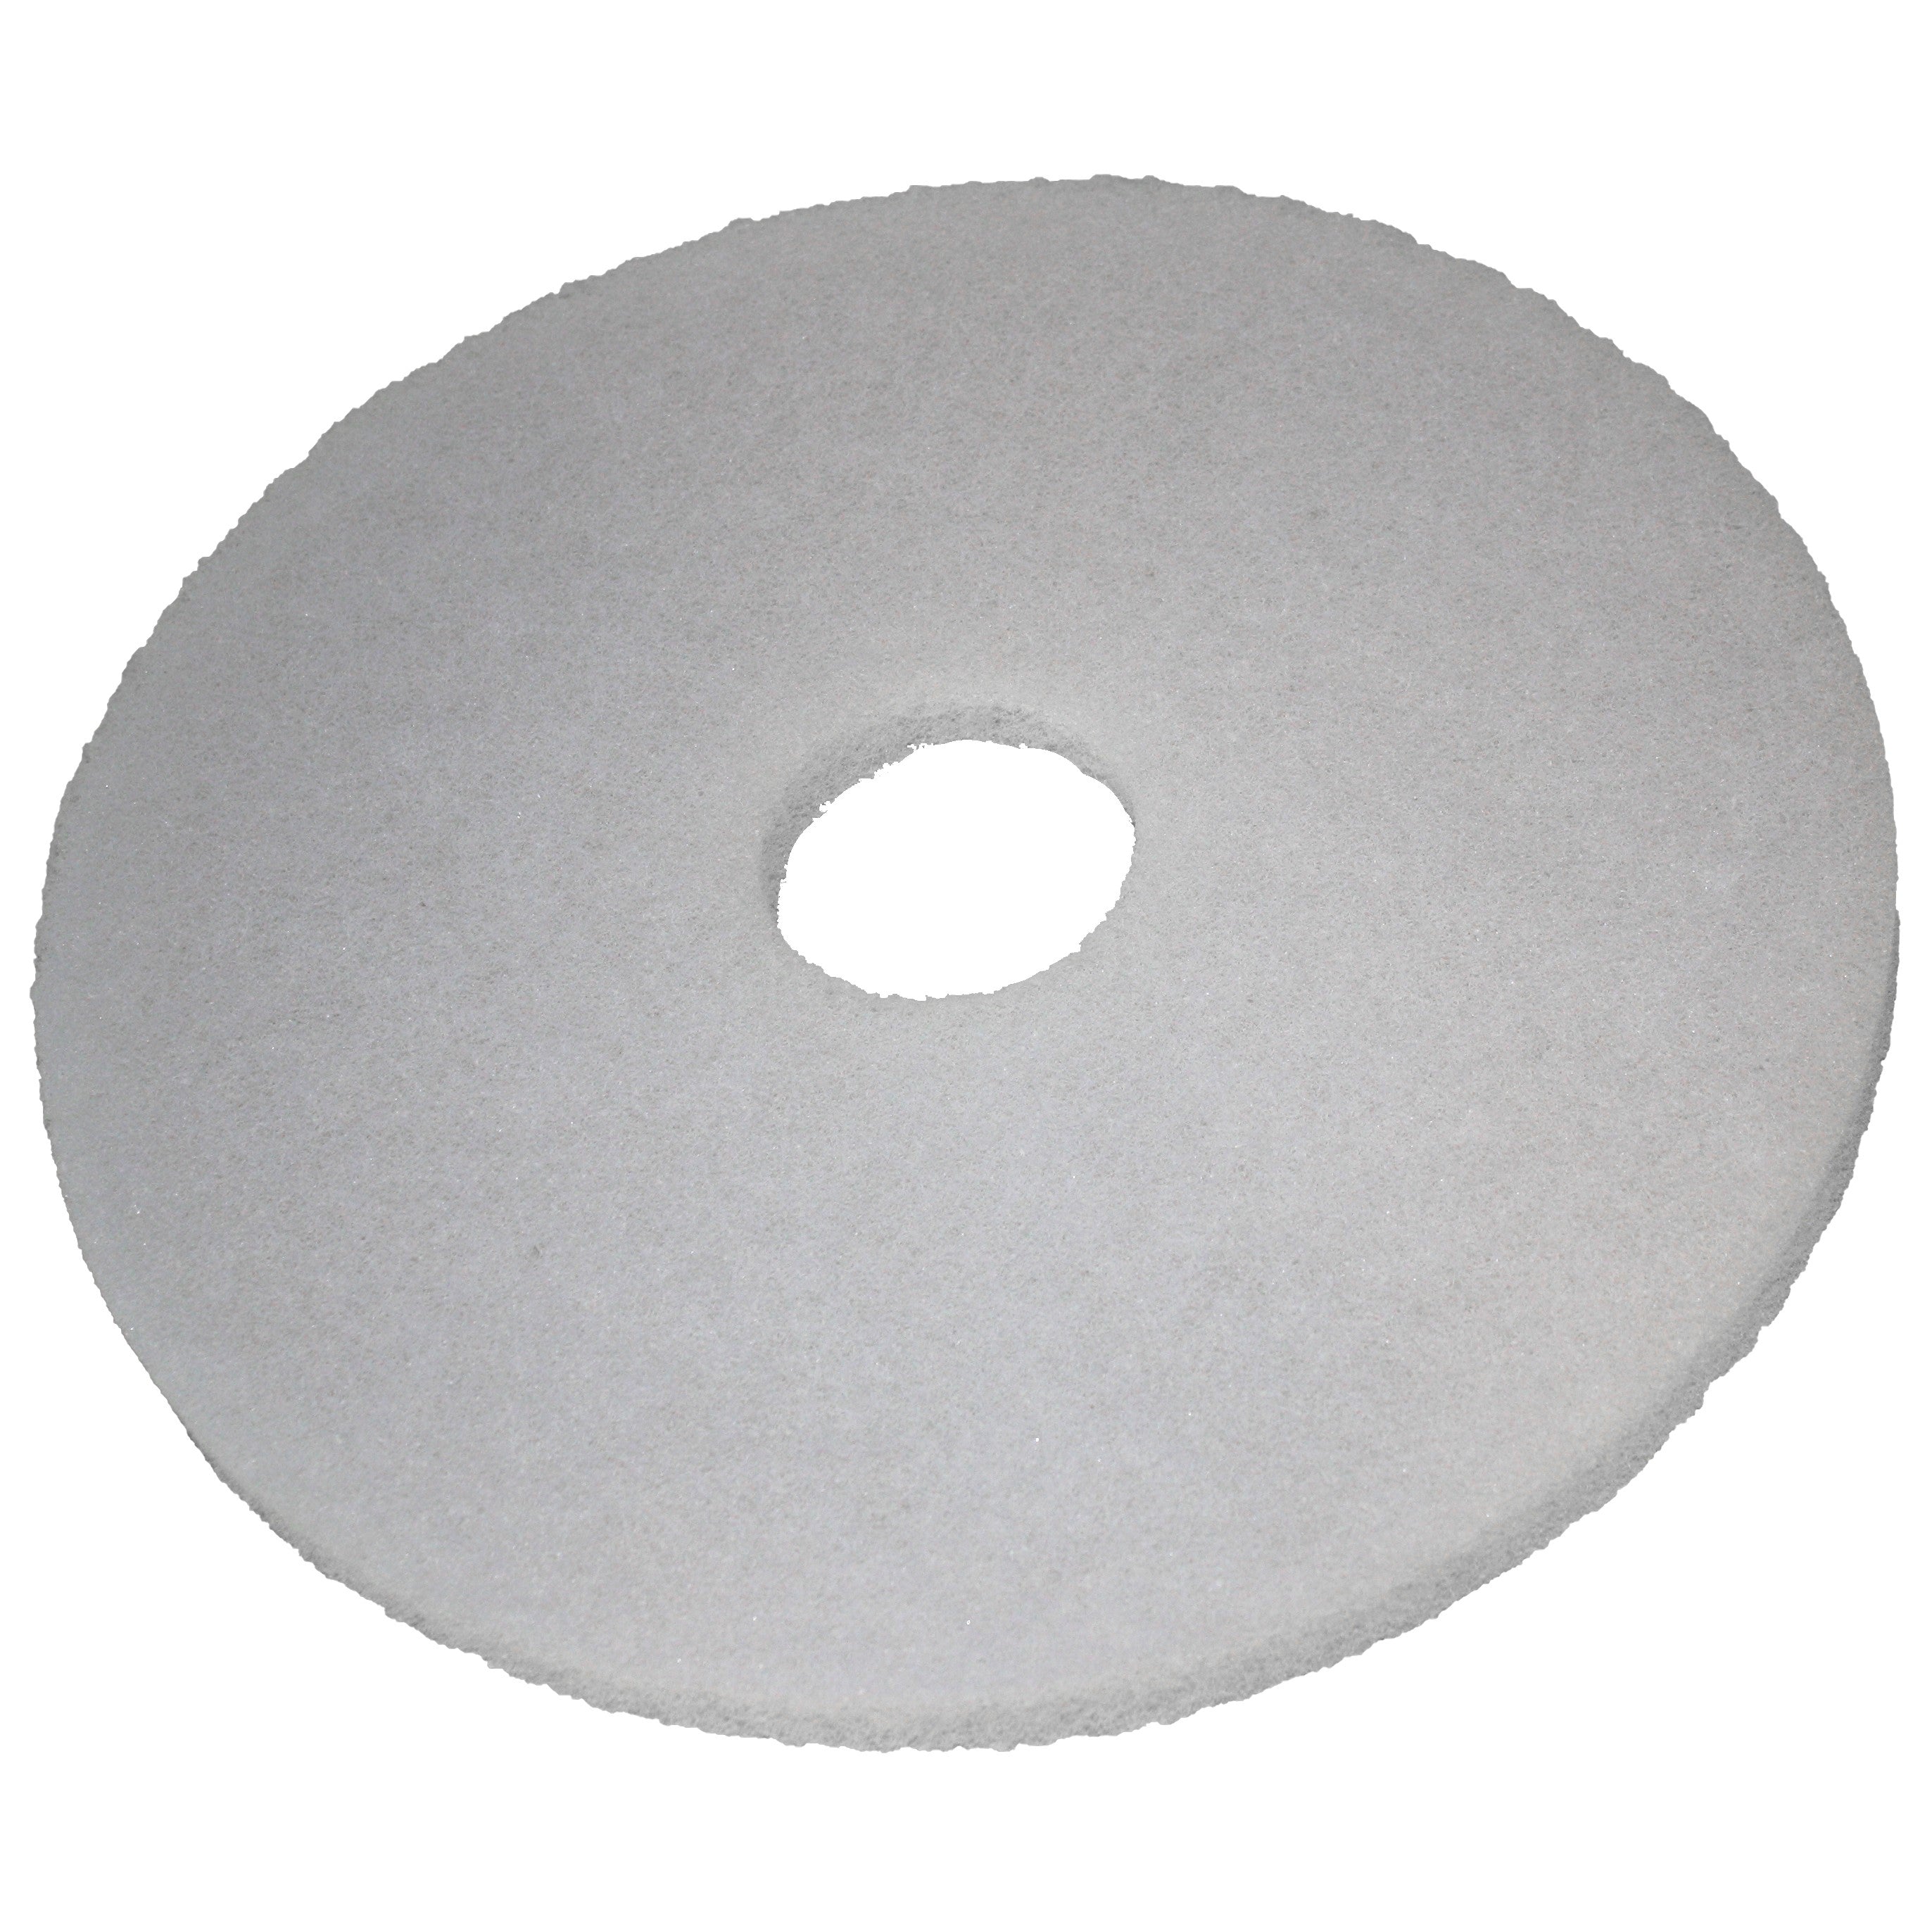 Pad blanc, Ø 355 mm, polyester